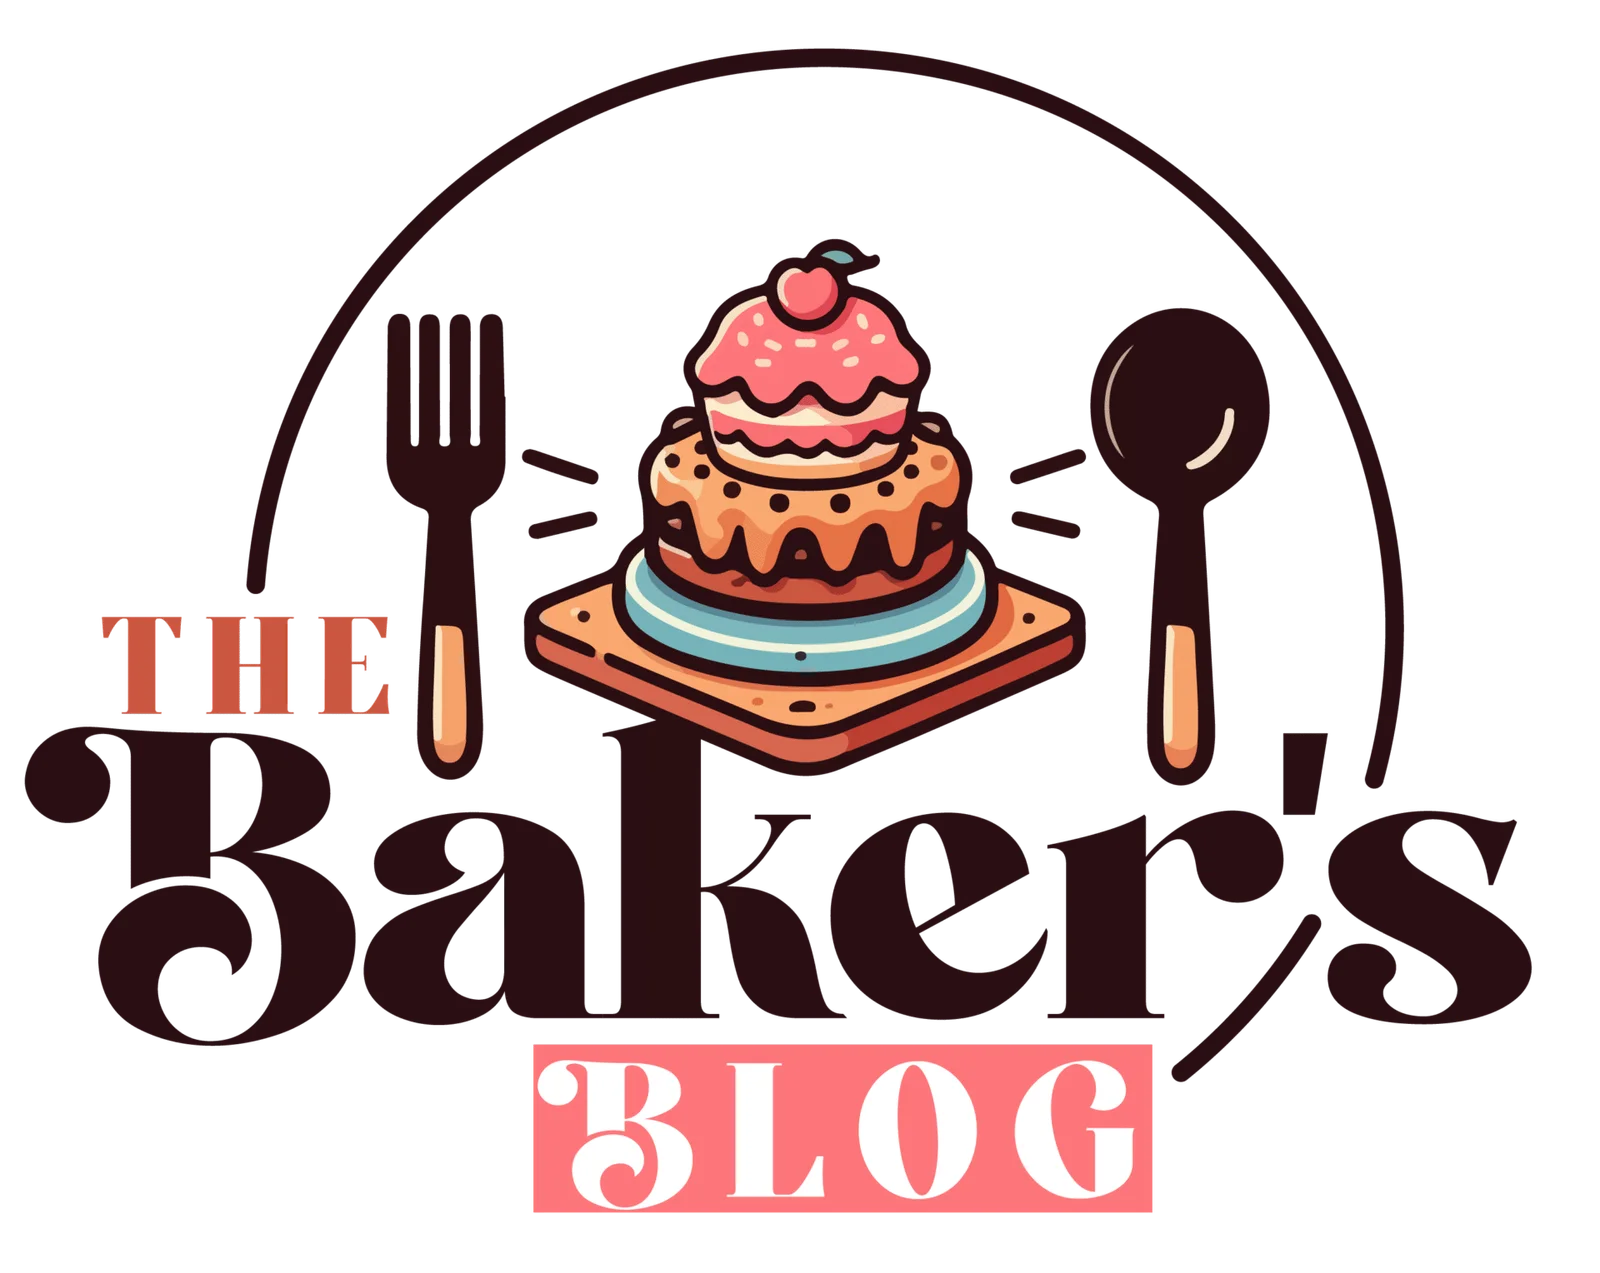 The Baker's Blog